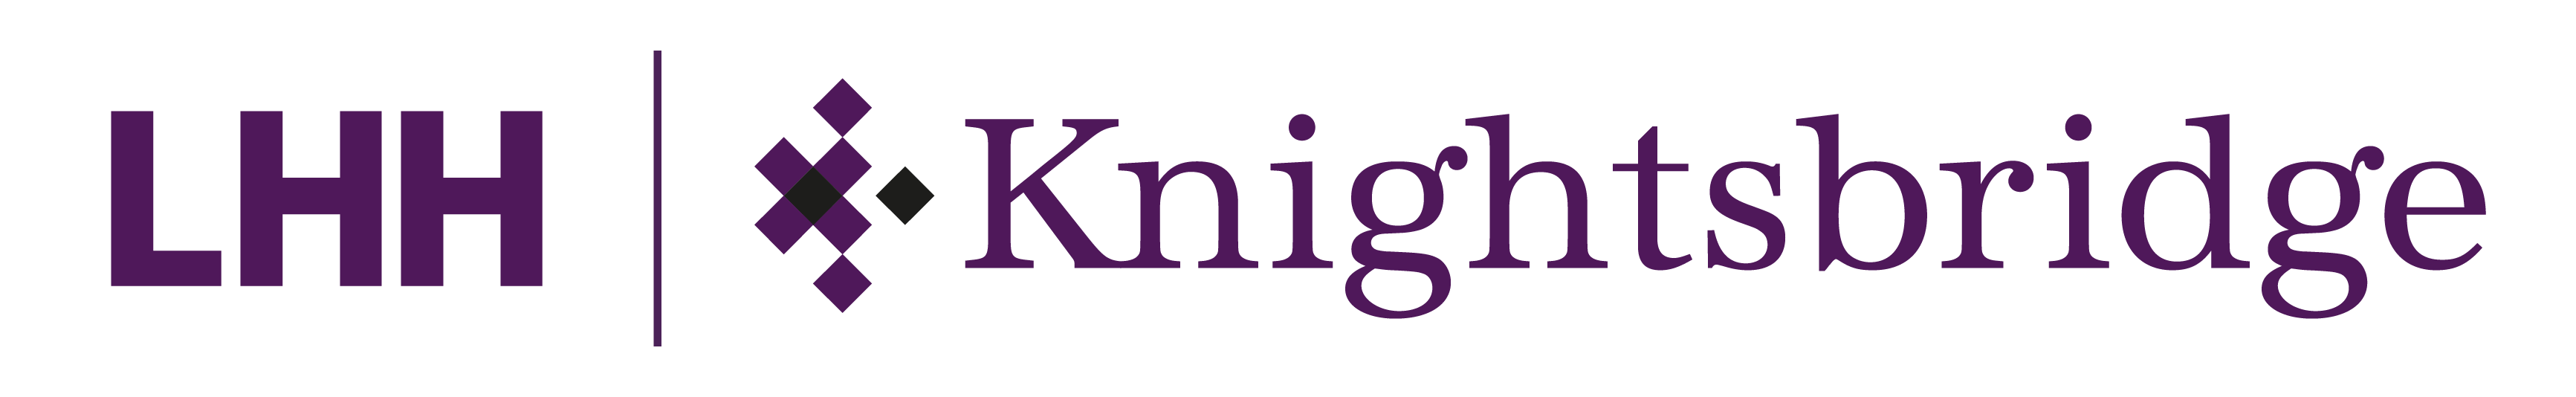 kb search logo